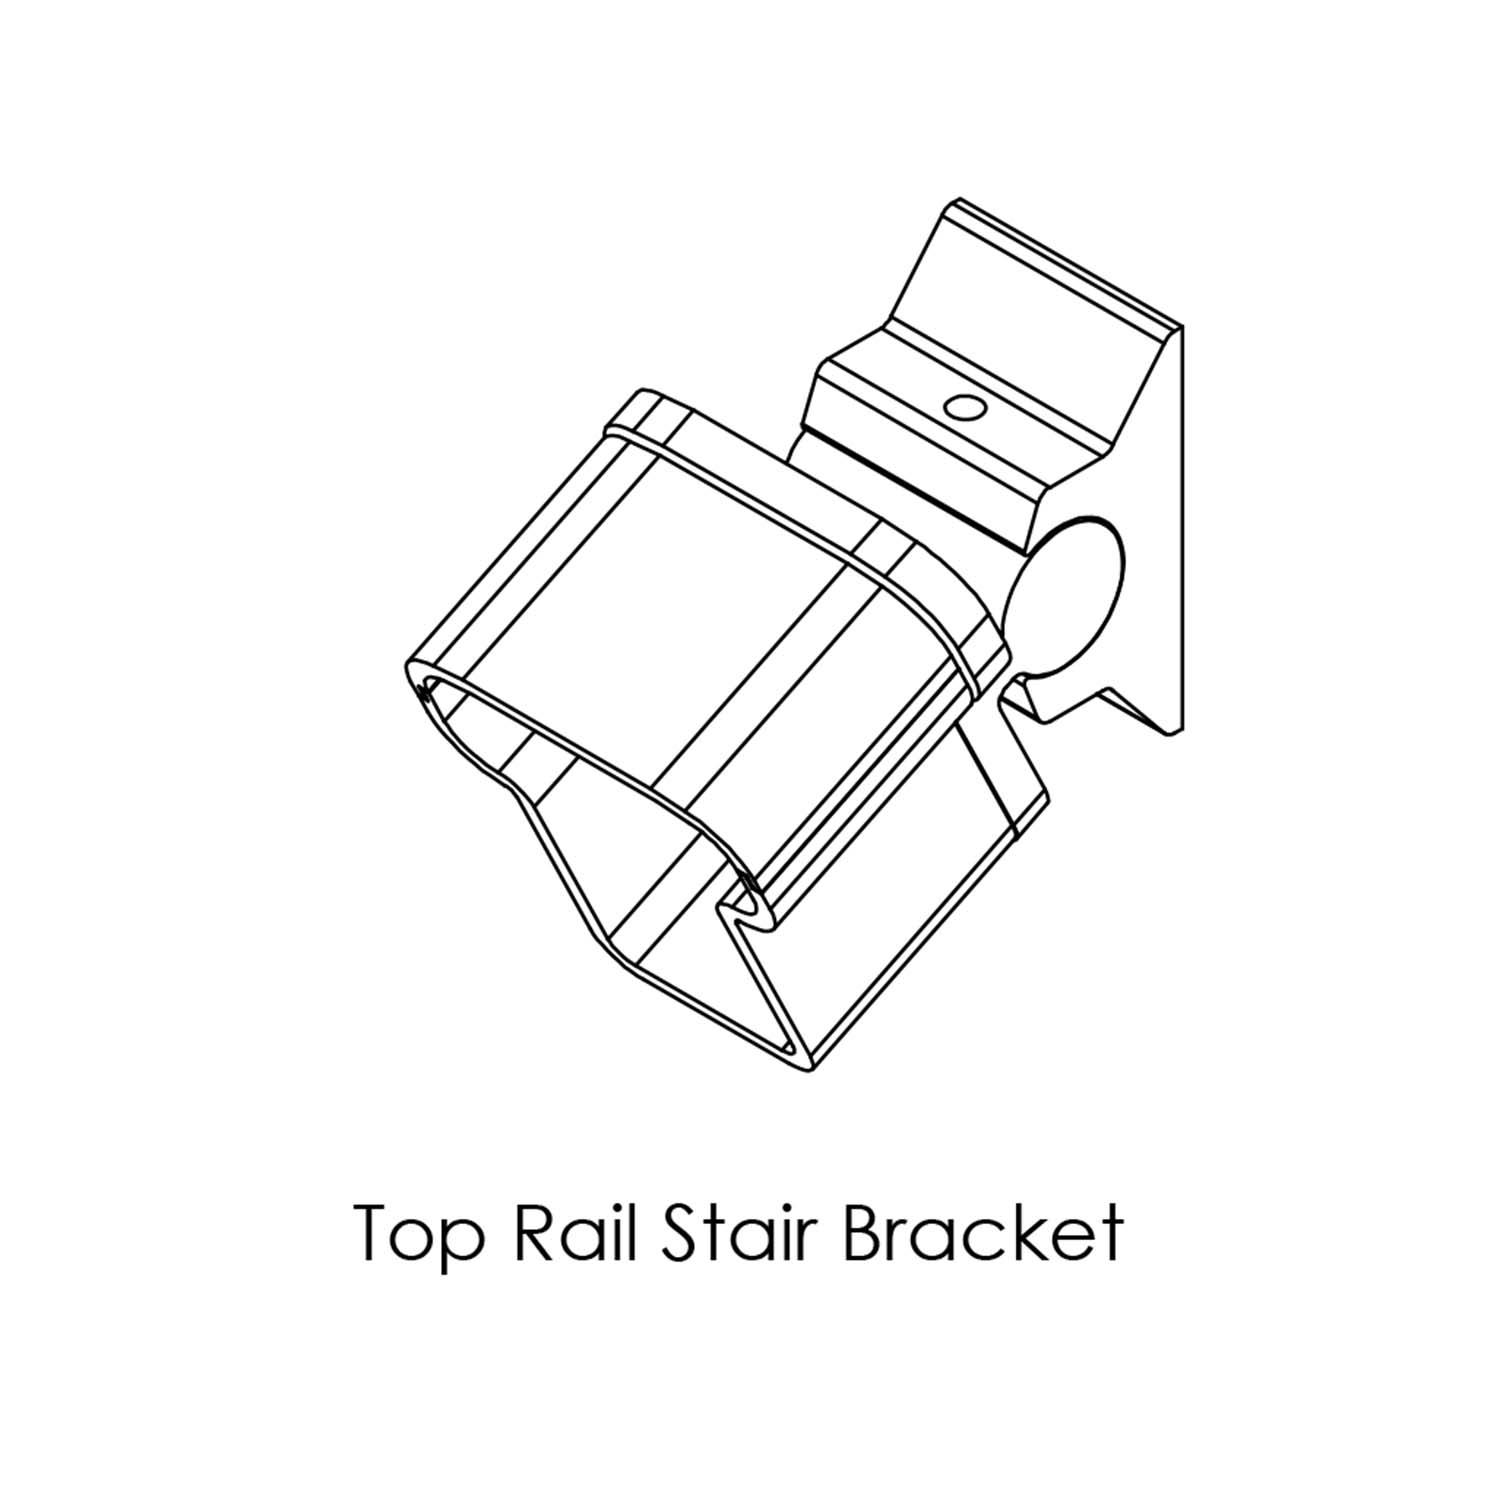 Top rail stair bracket diagram